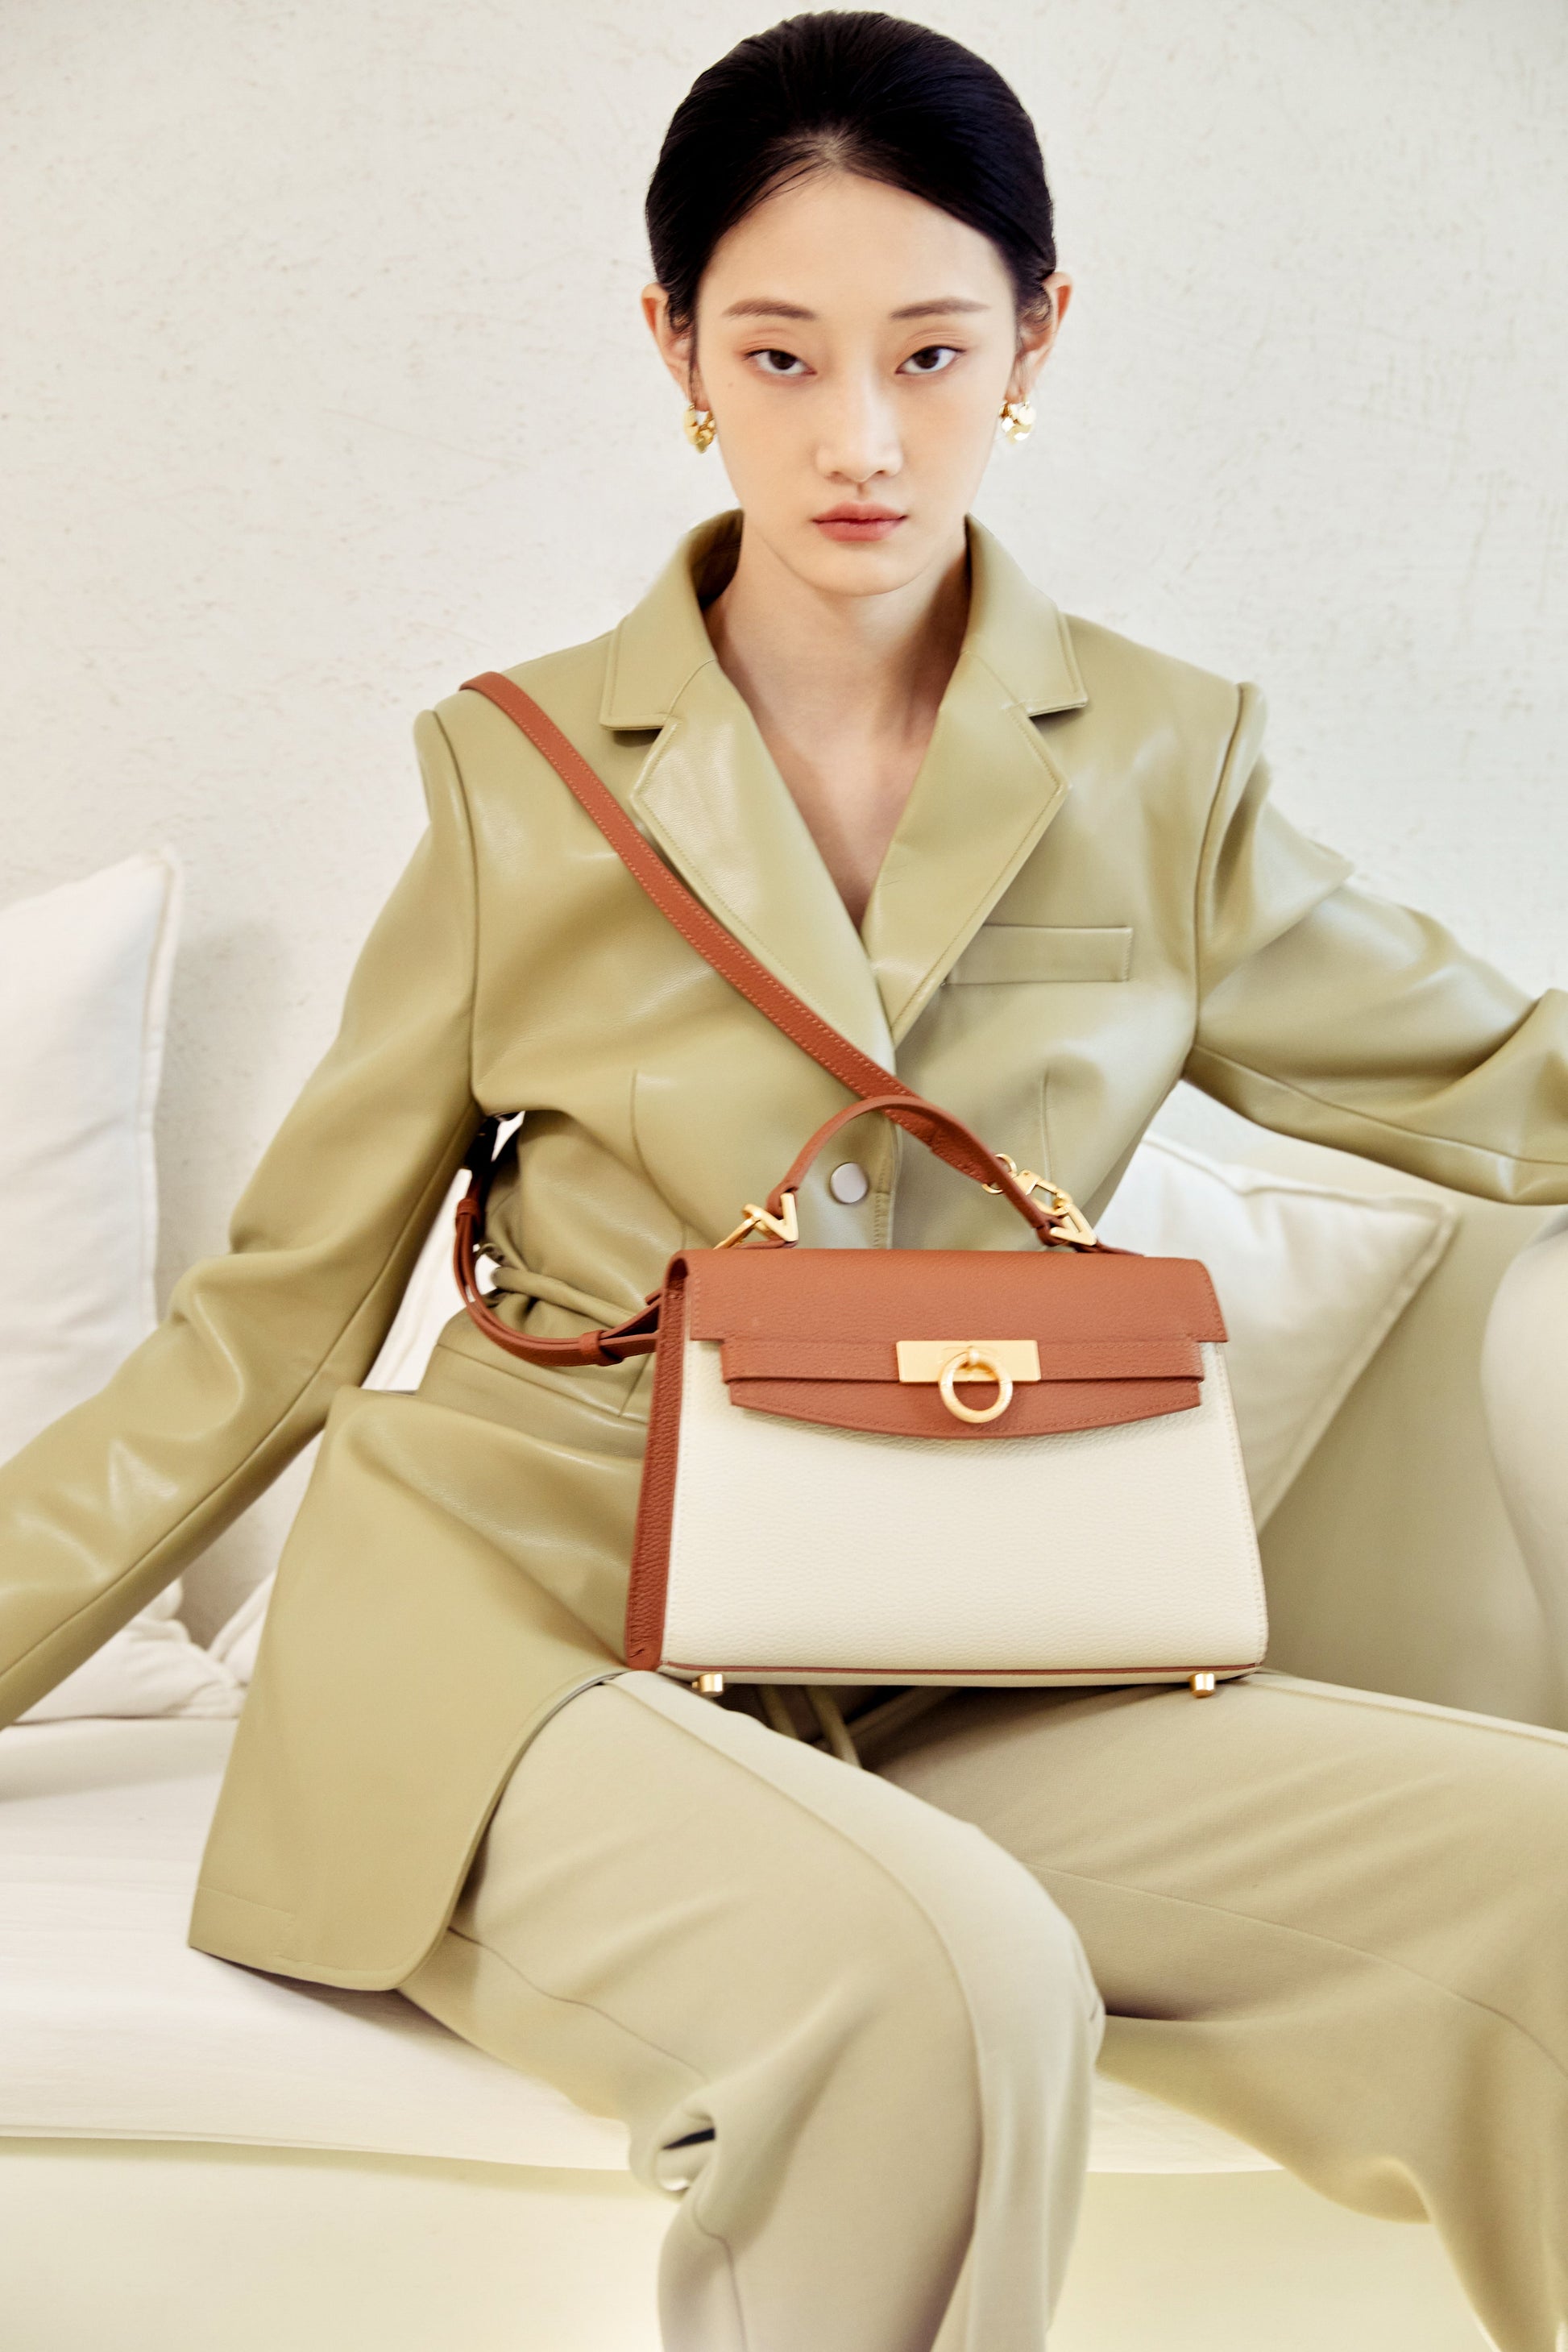 Unlocked Top Handle Bag in Cream Brown | Parisa Wang